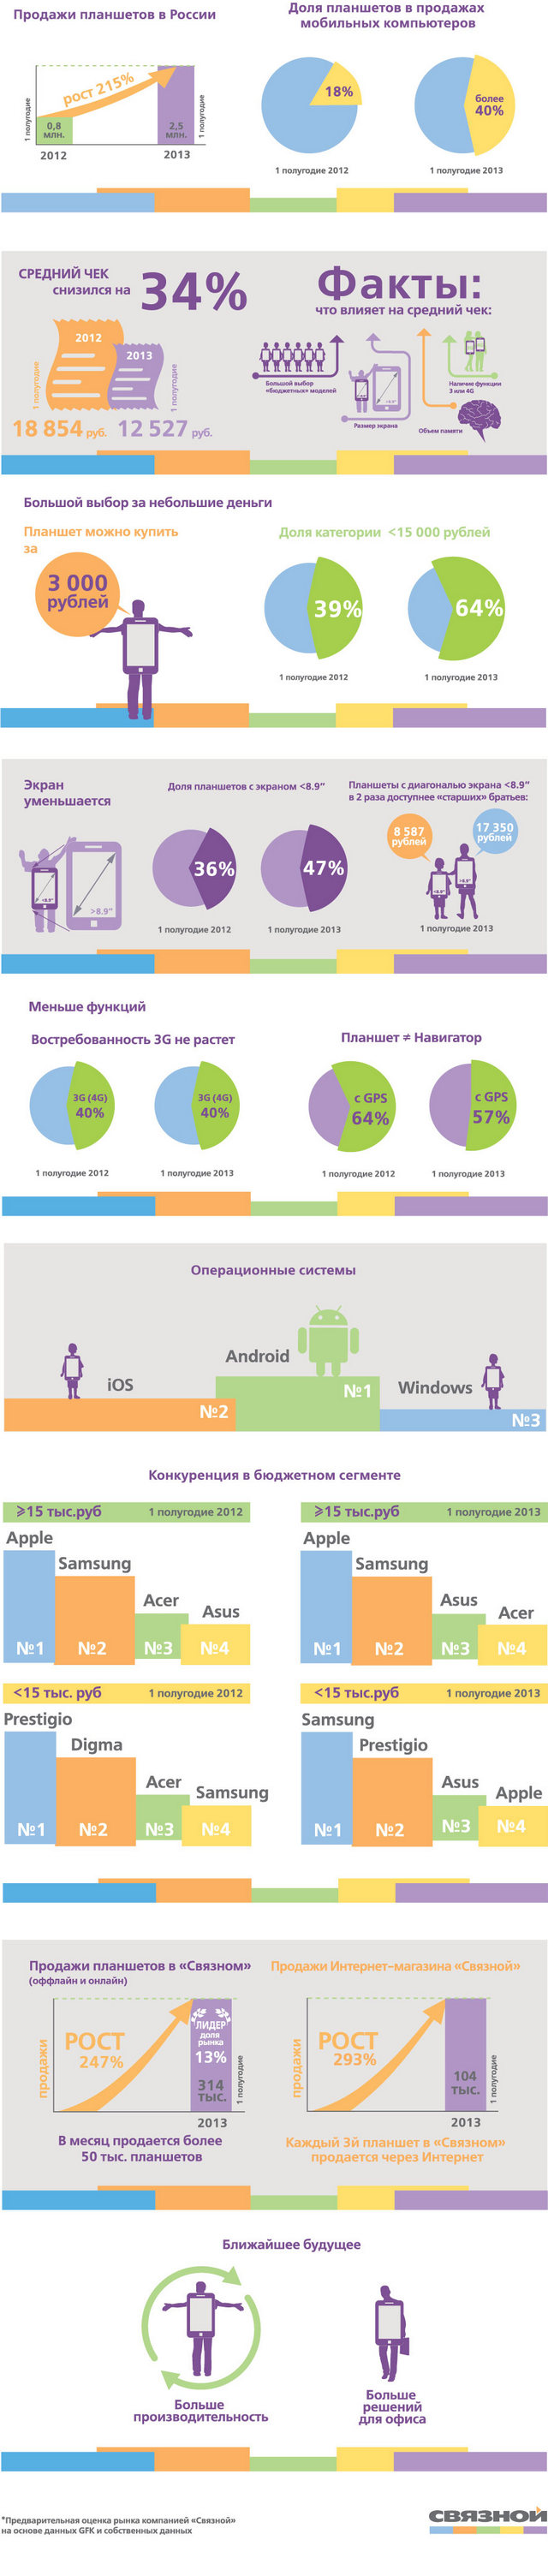 Инфографика: как быстро планшеты вытесняют ноутбуки и нетбуки в России?-2